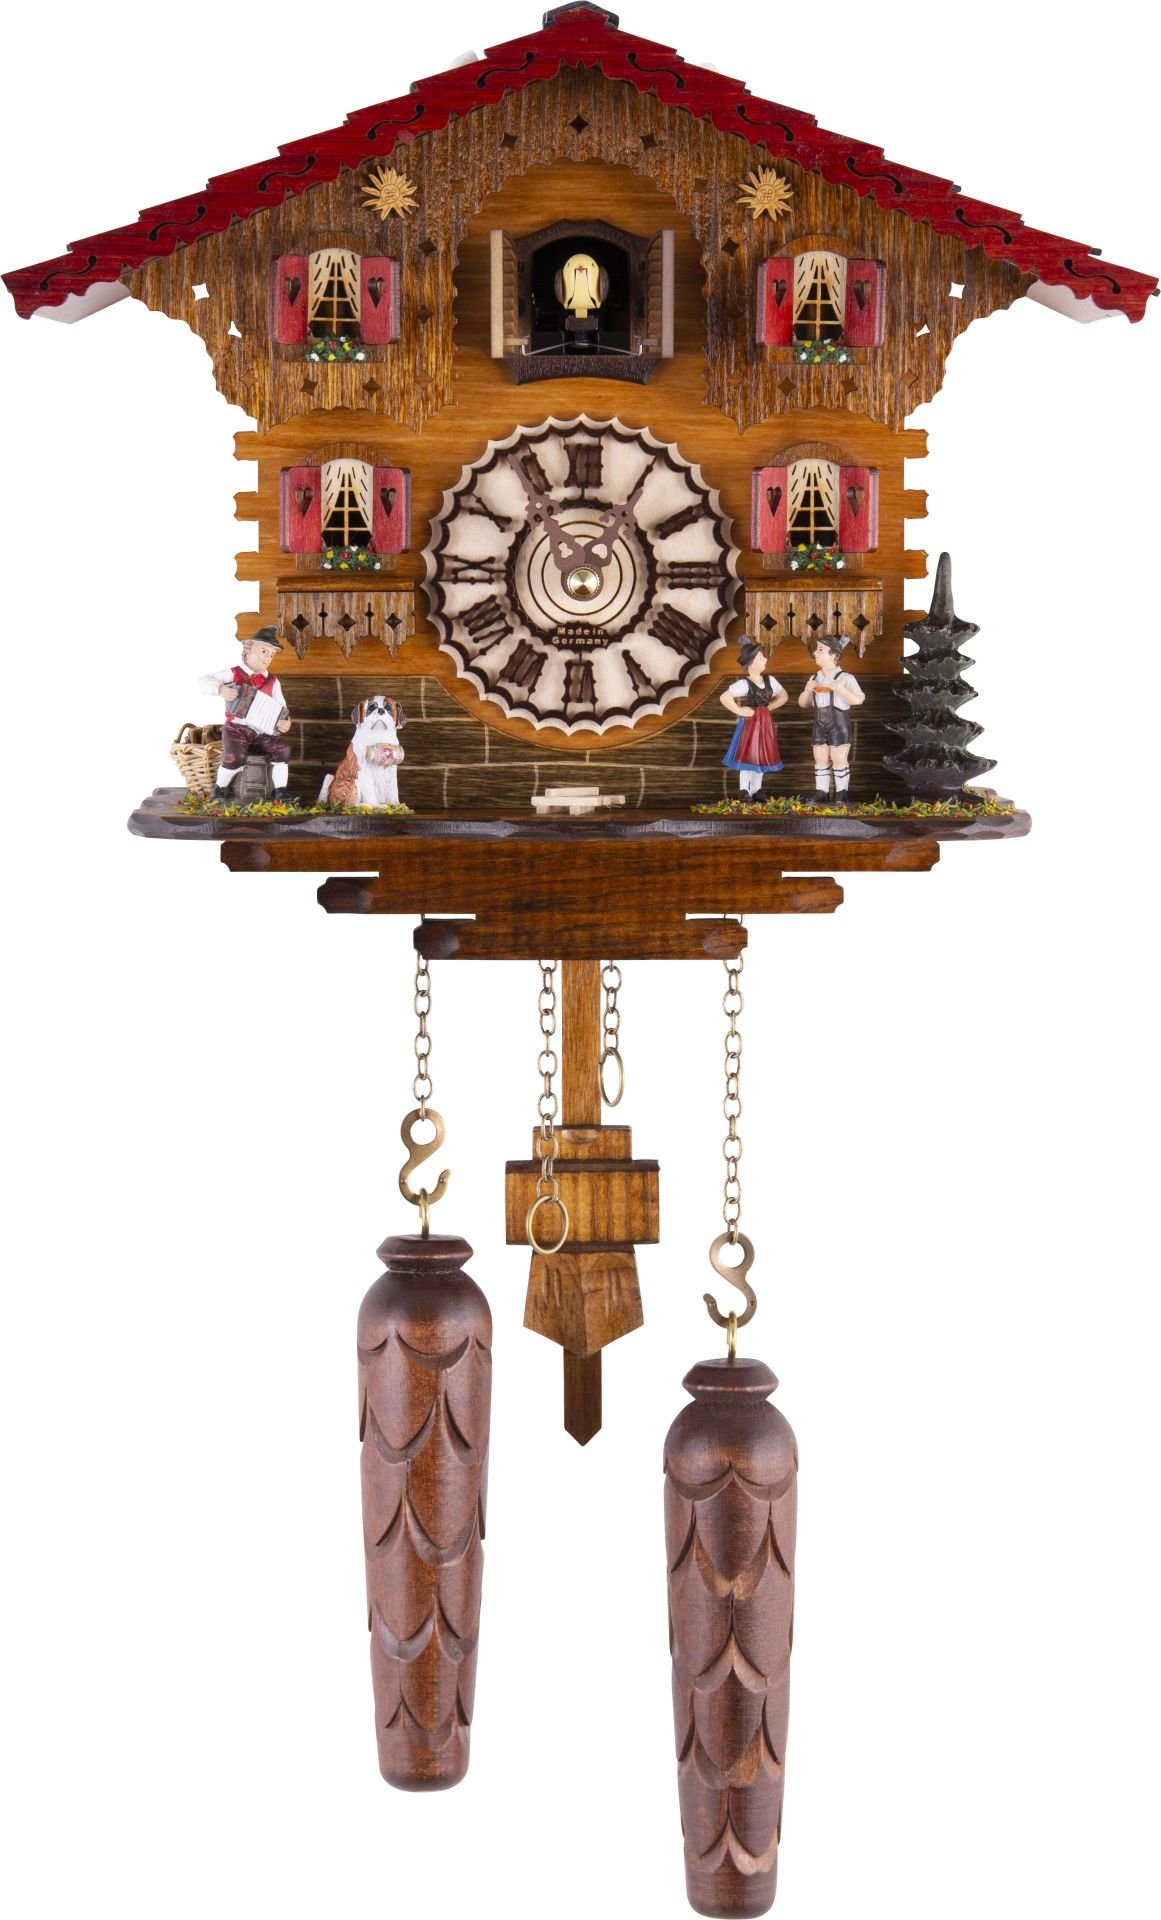 Kuckucksuhr Chalet-Stil Quarz-Uhrwerk 23cm von Trenkle Uhren